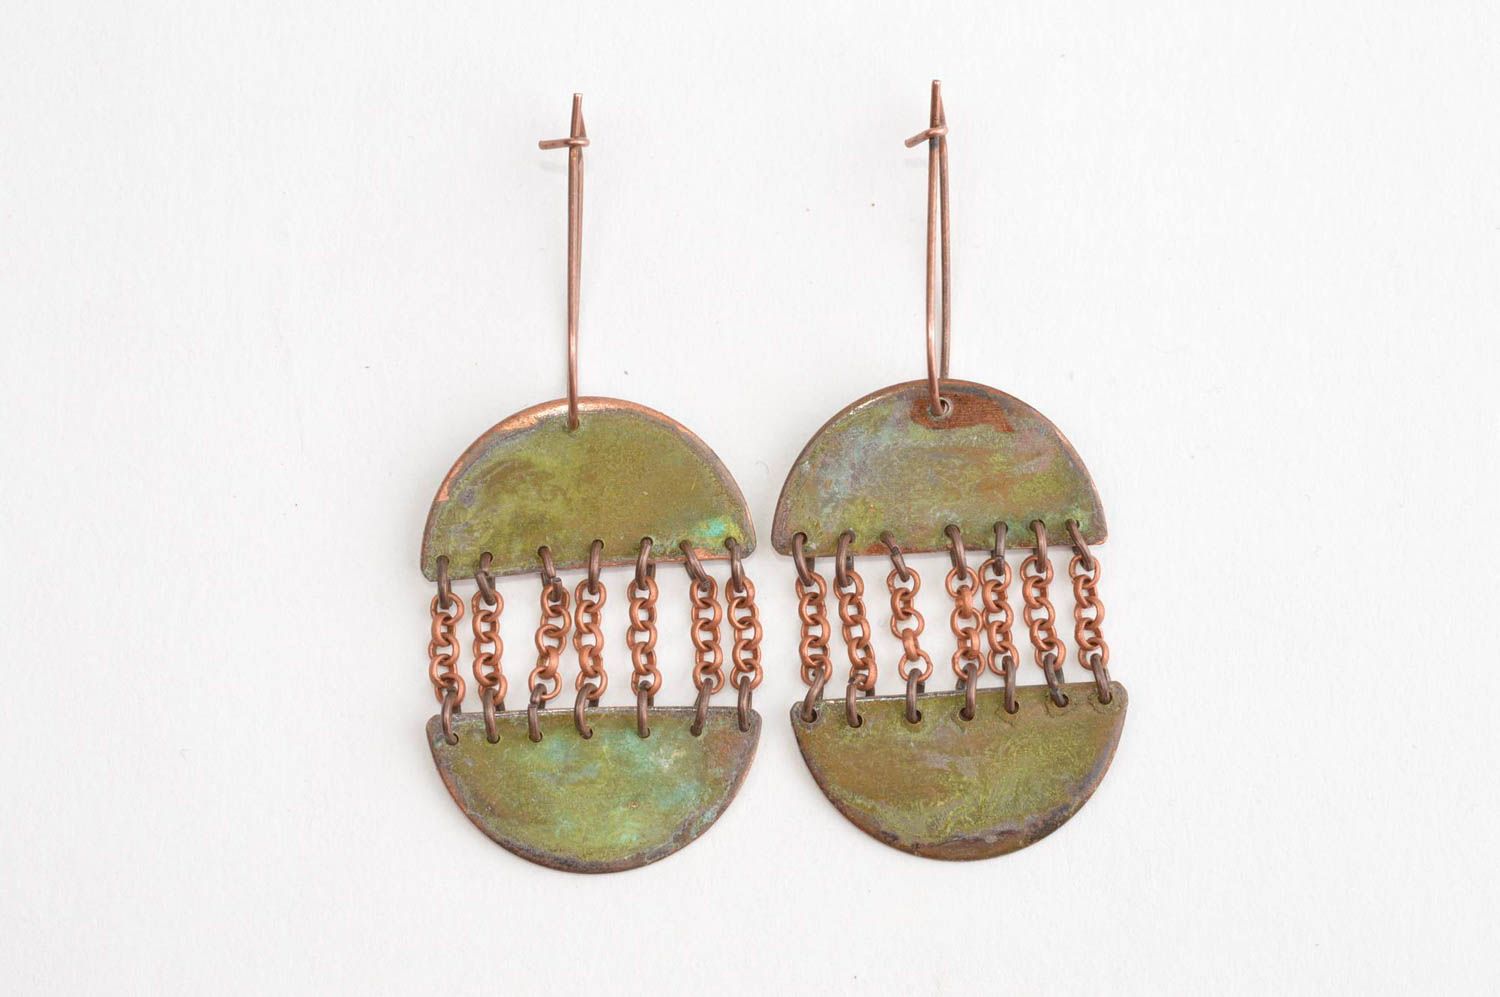 Unusual handmade metal earrings costume jewelry designs metal craft ideas photo 2